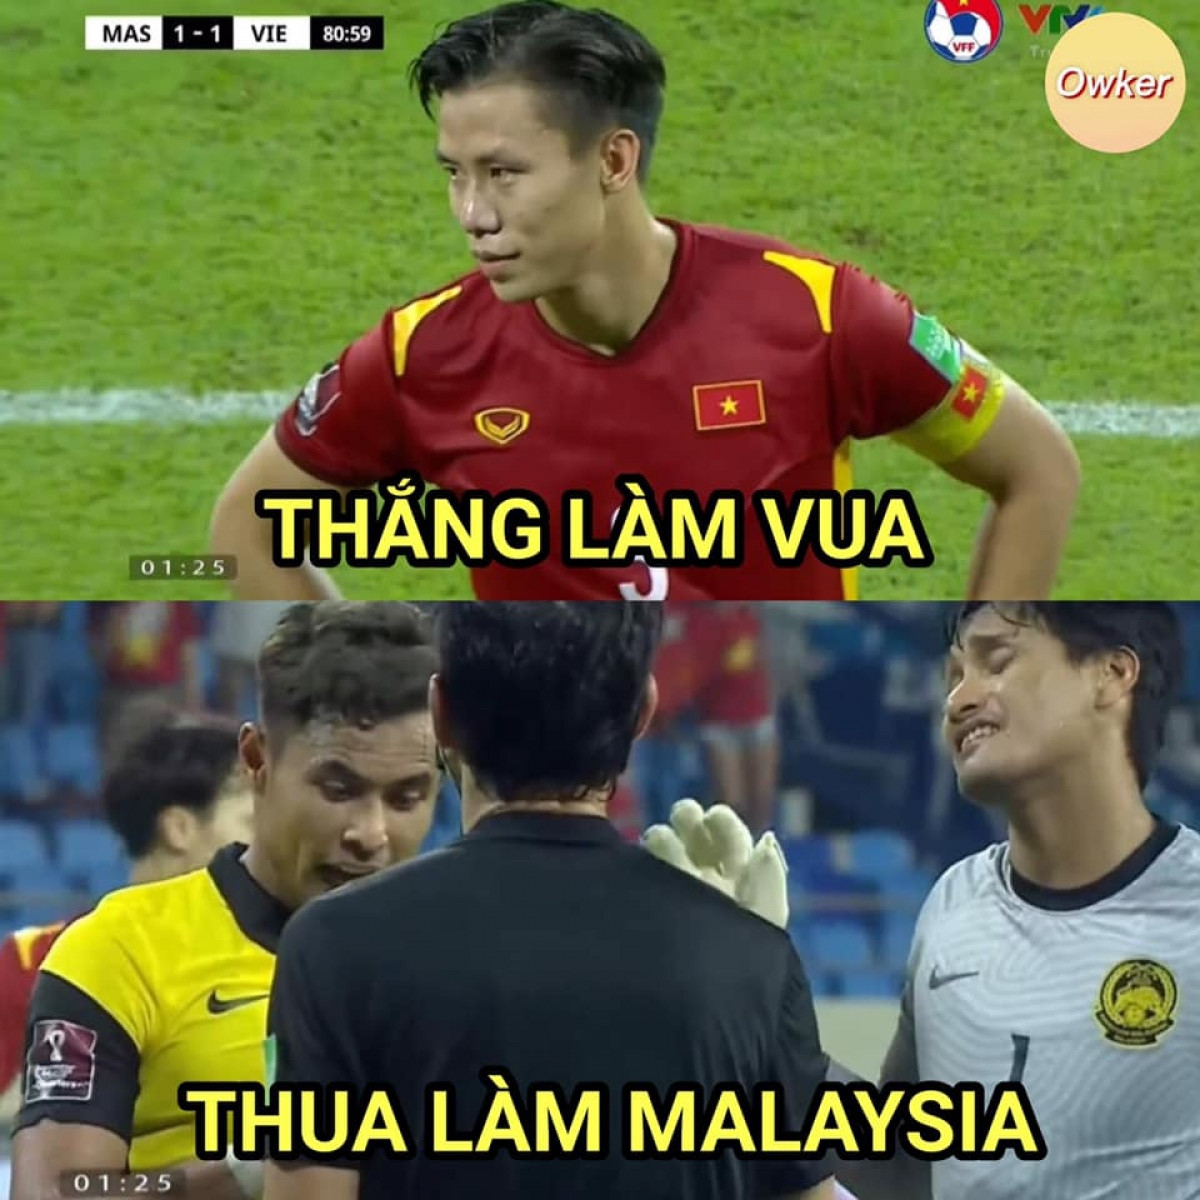 Malaysia luôn thất bại trước ĐT Việt Nam trong những năm gần đây. (Ảnh: Owker)